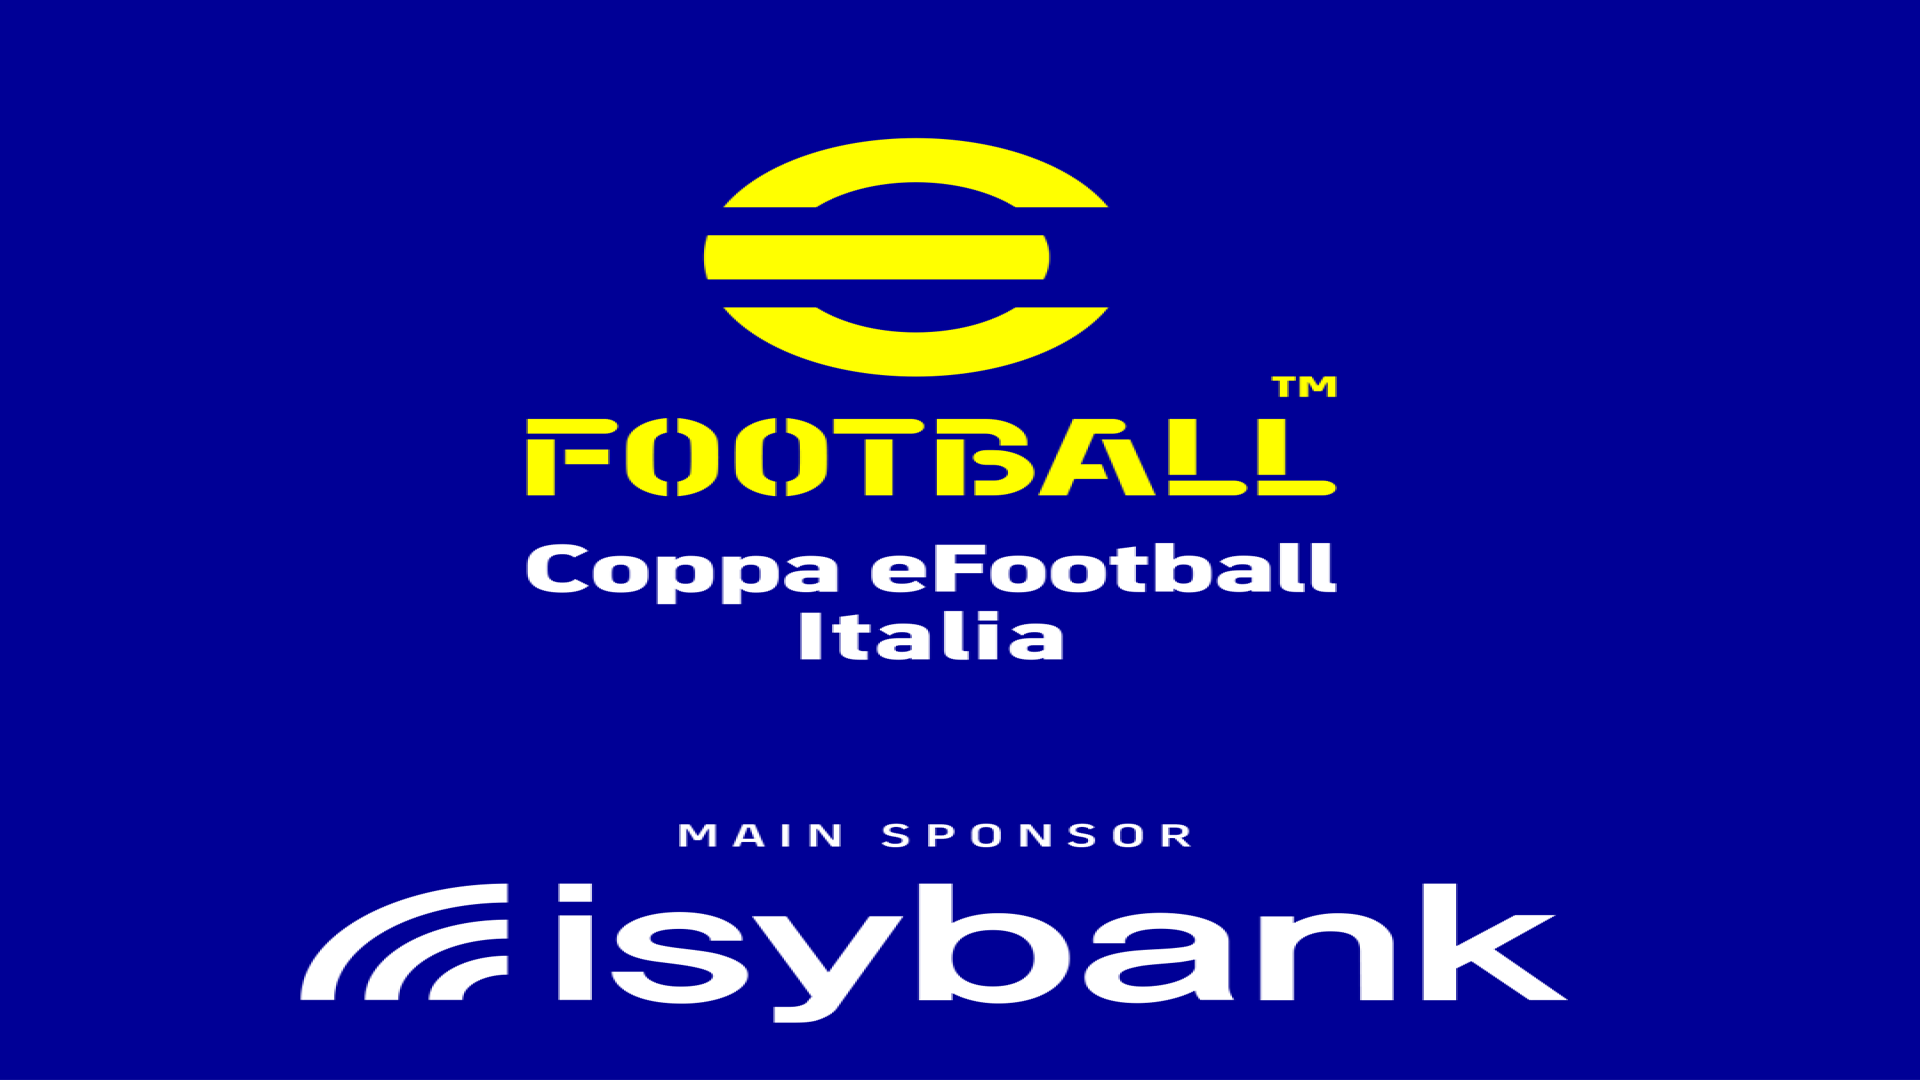 eFootball; Coppa eFootball Italia